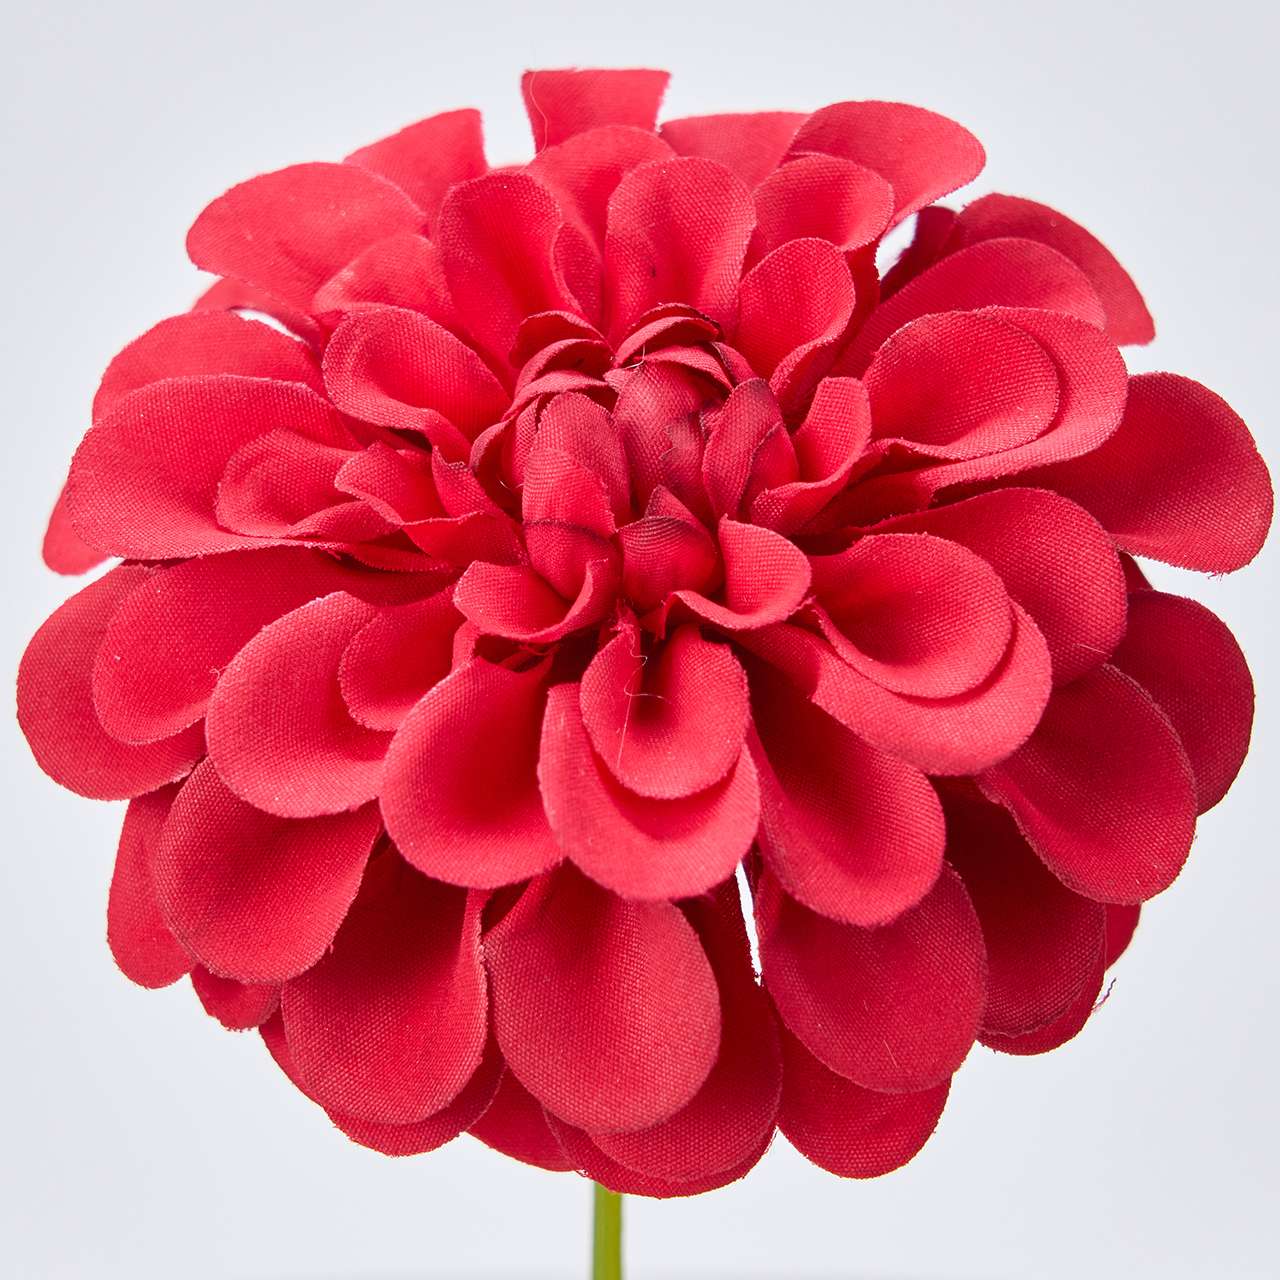 マイフラ】 通販/MAGIQ アンナダリアピック レッド アーティフィシャルフラワー 造花 ダリア FM007348-003(レッド):  MAGIQ(アーティフィシャルフラワー 造花)/全国にMAGIQ、花器、花資材などをお届けします。